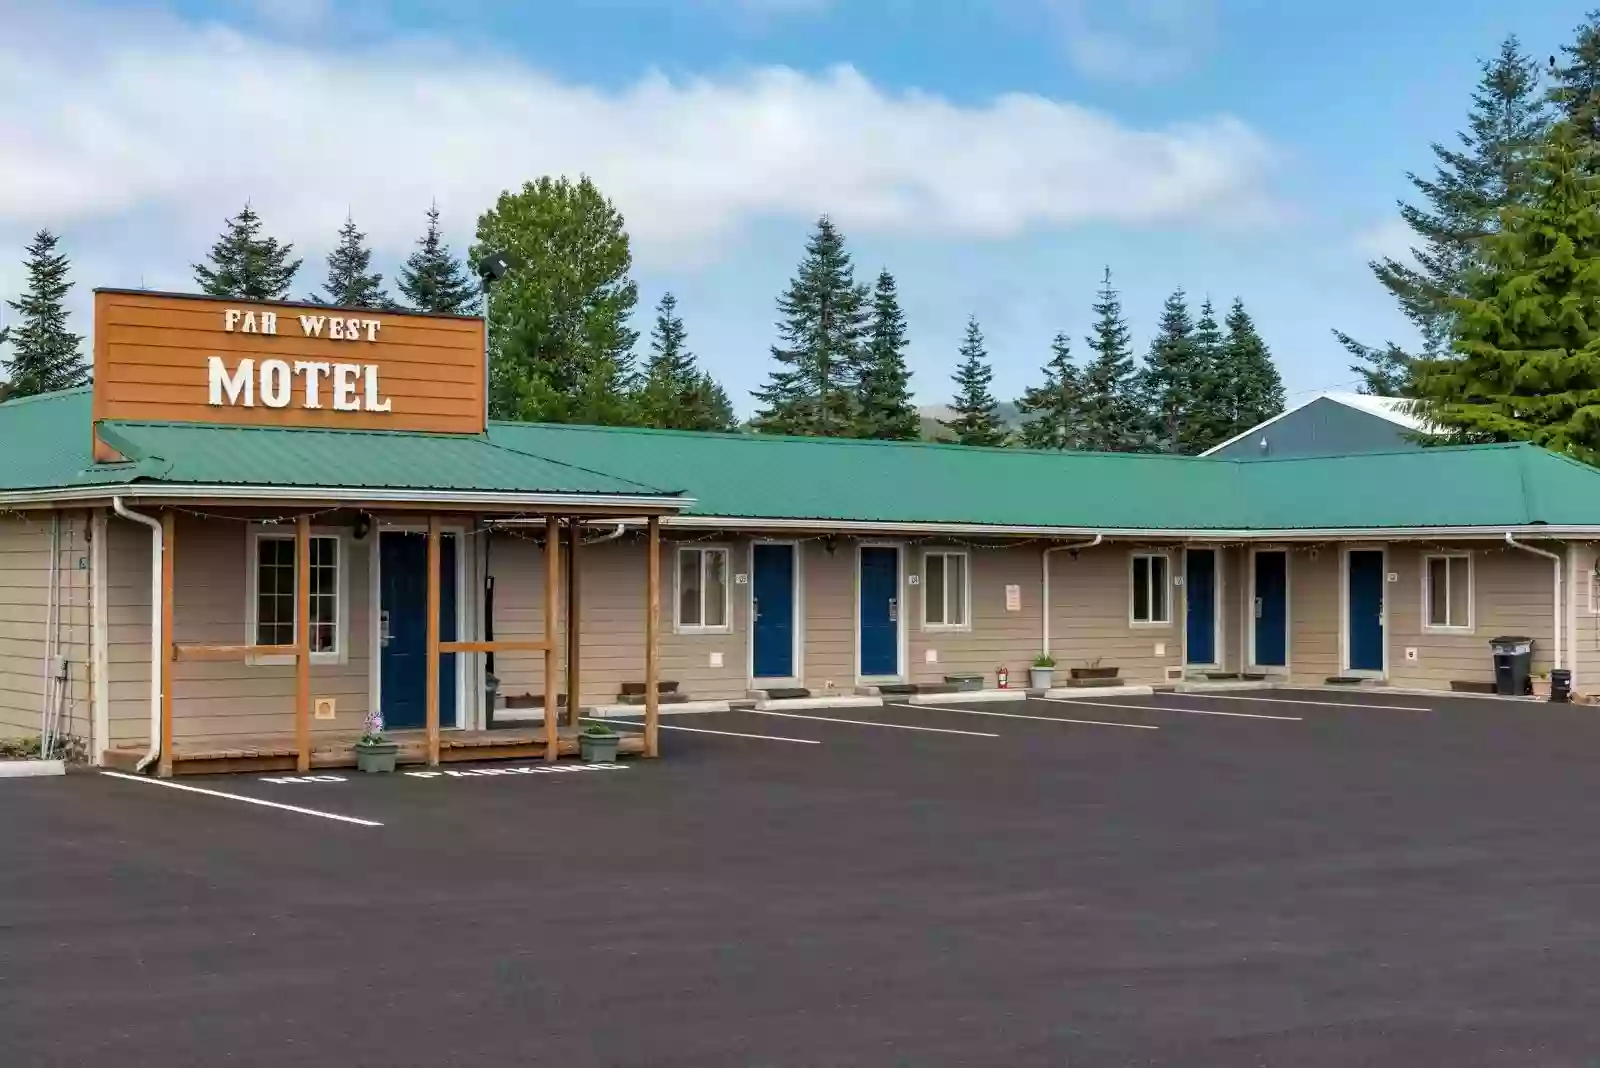 Farwest Motel